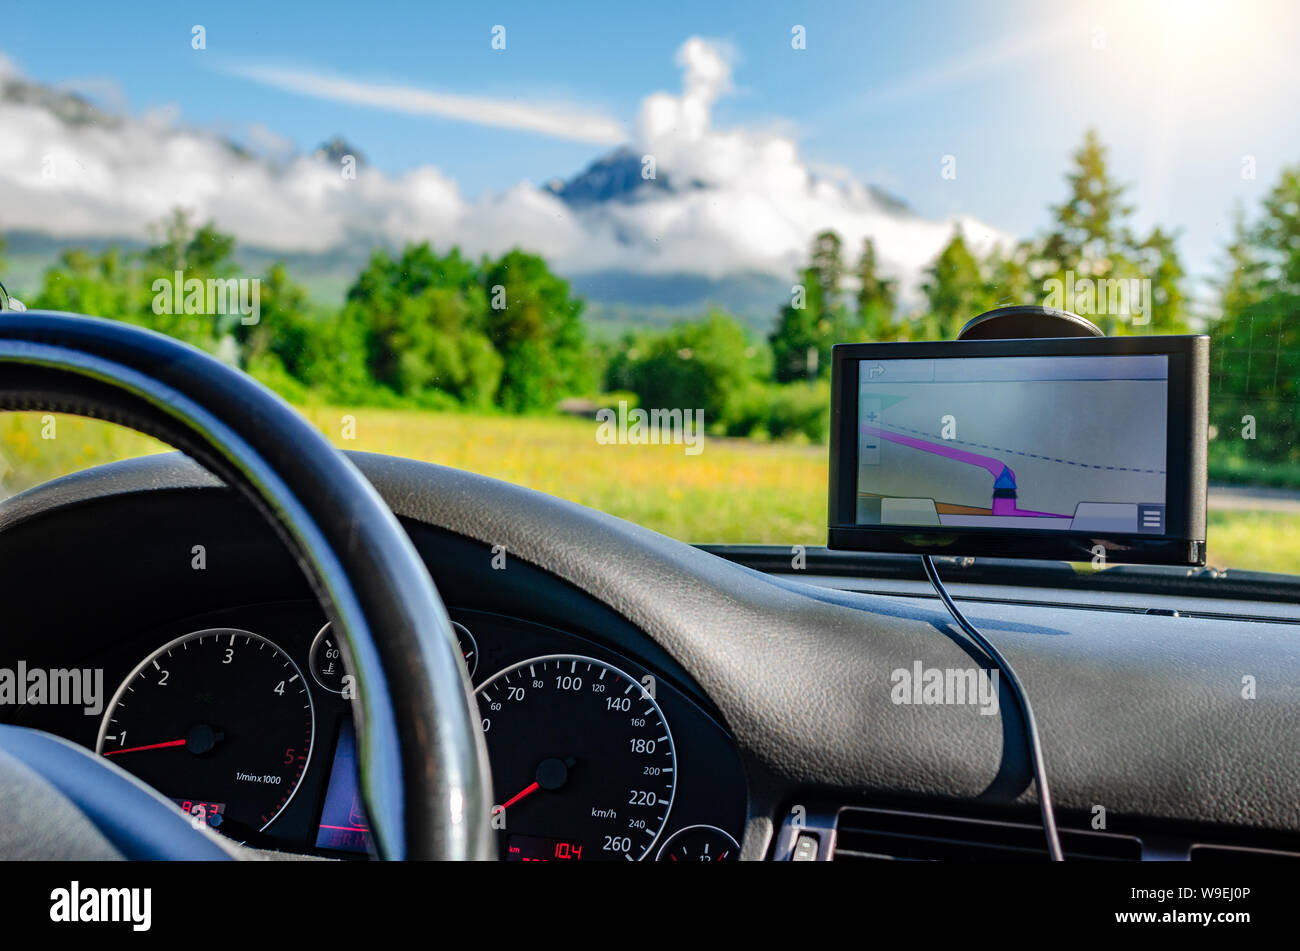 GPS Navigator in the car. Stock Photo